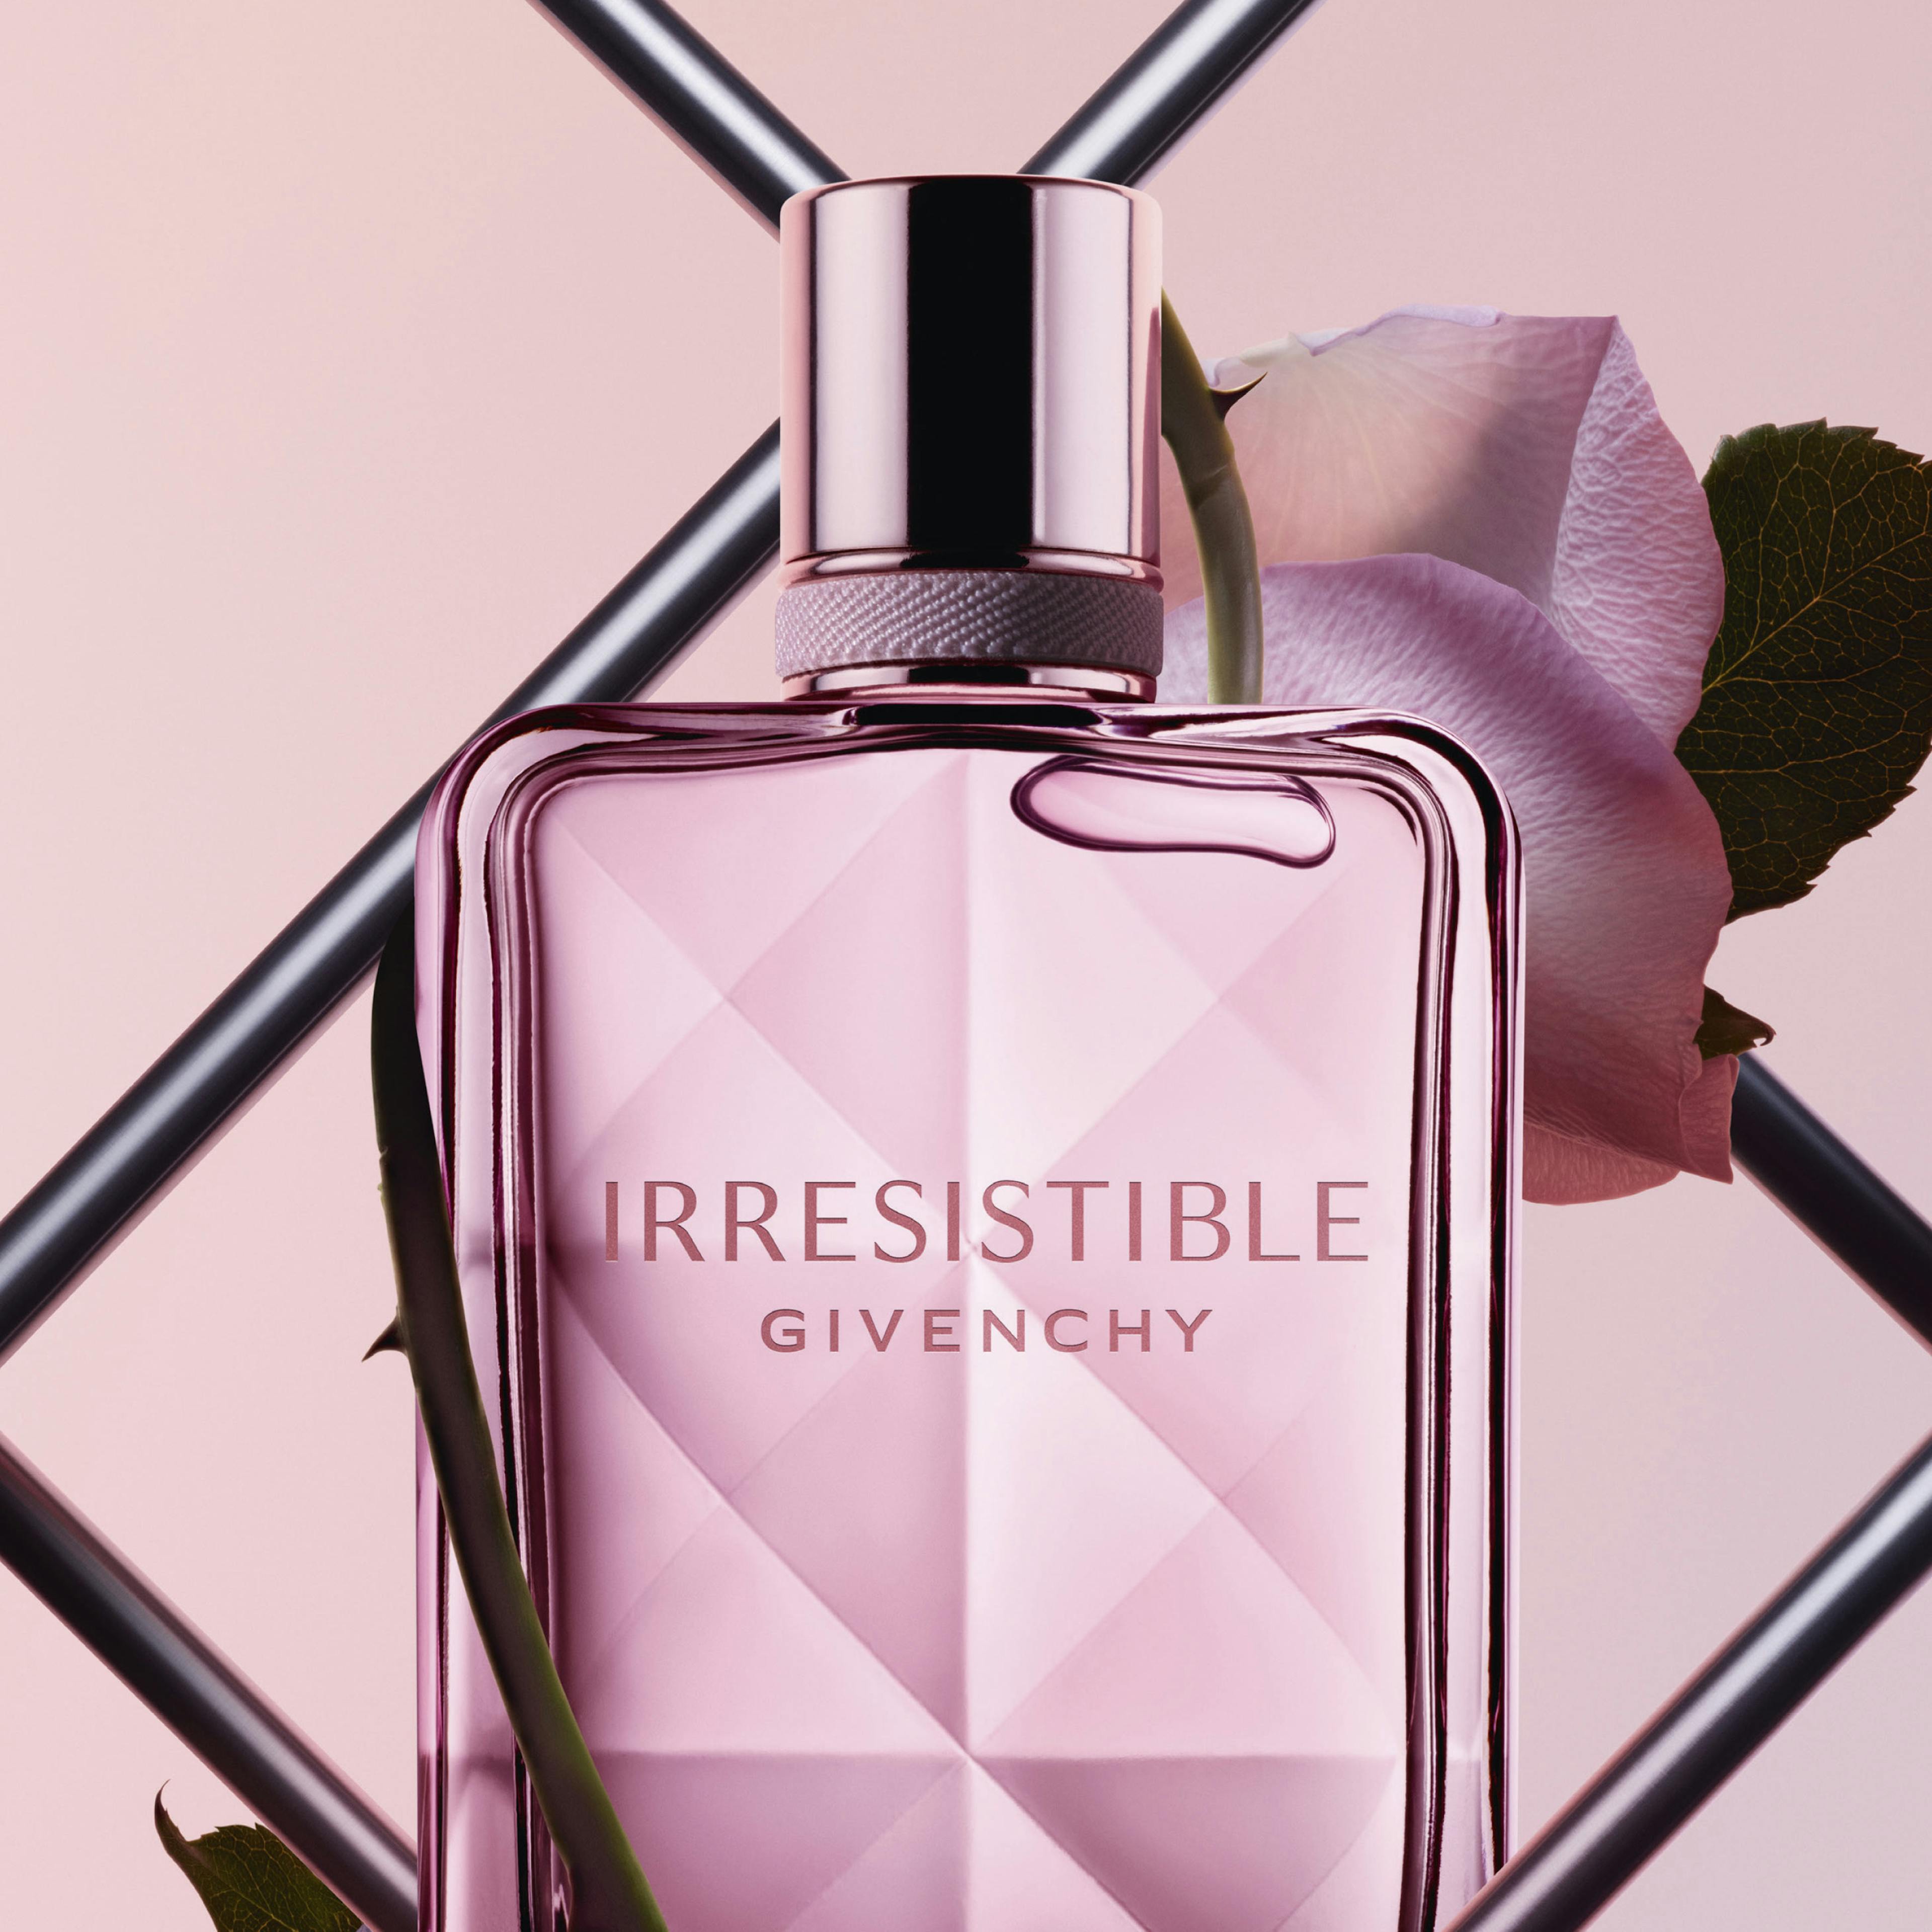 Irresistible Eau de Parfum Very Floral © Givenchy Parfums